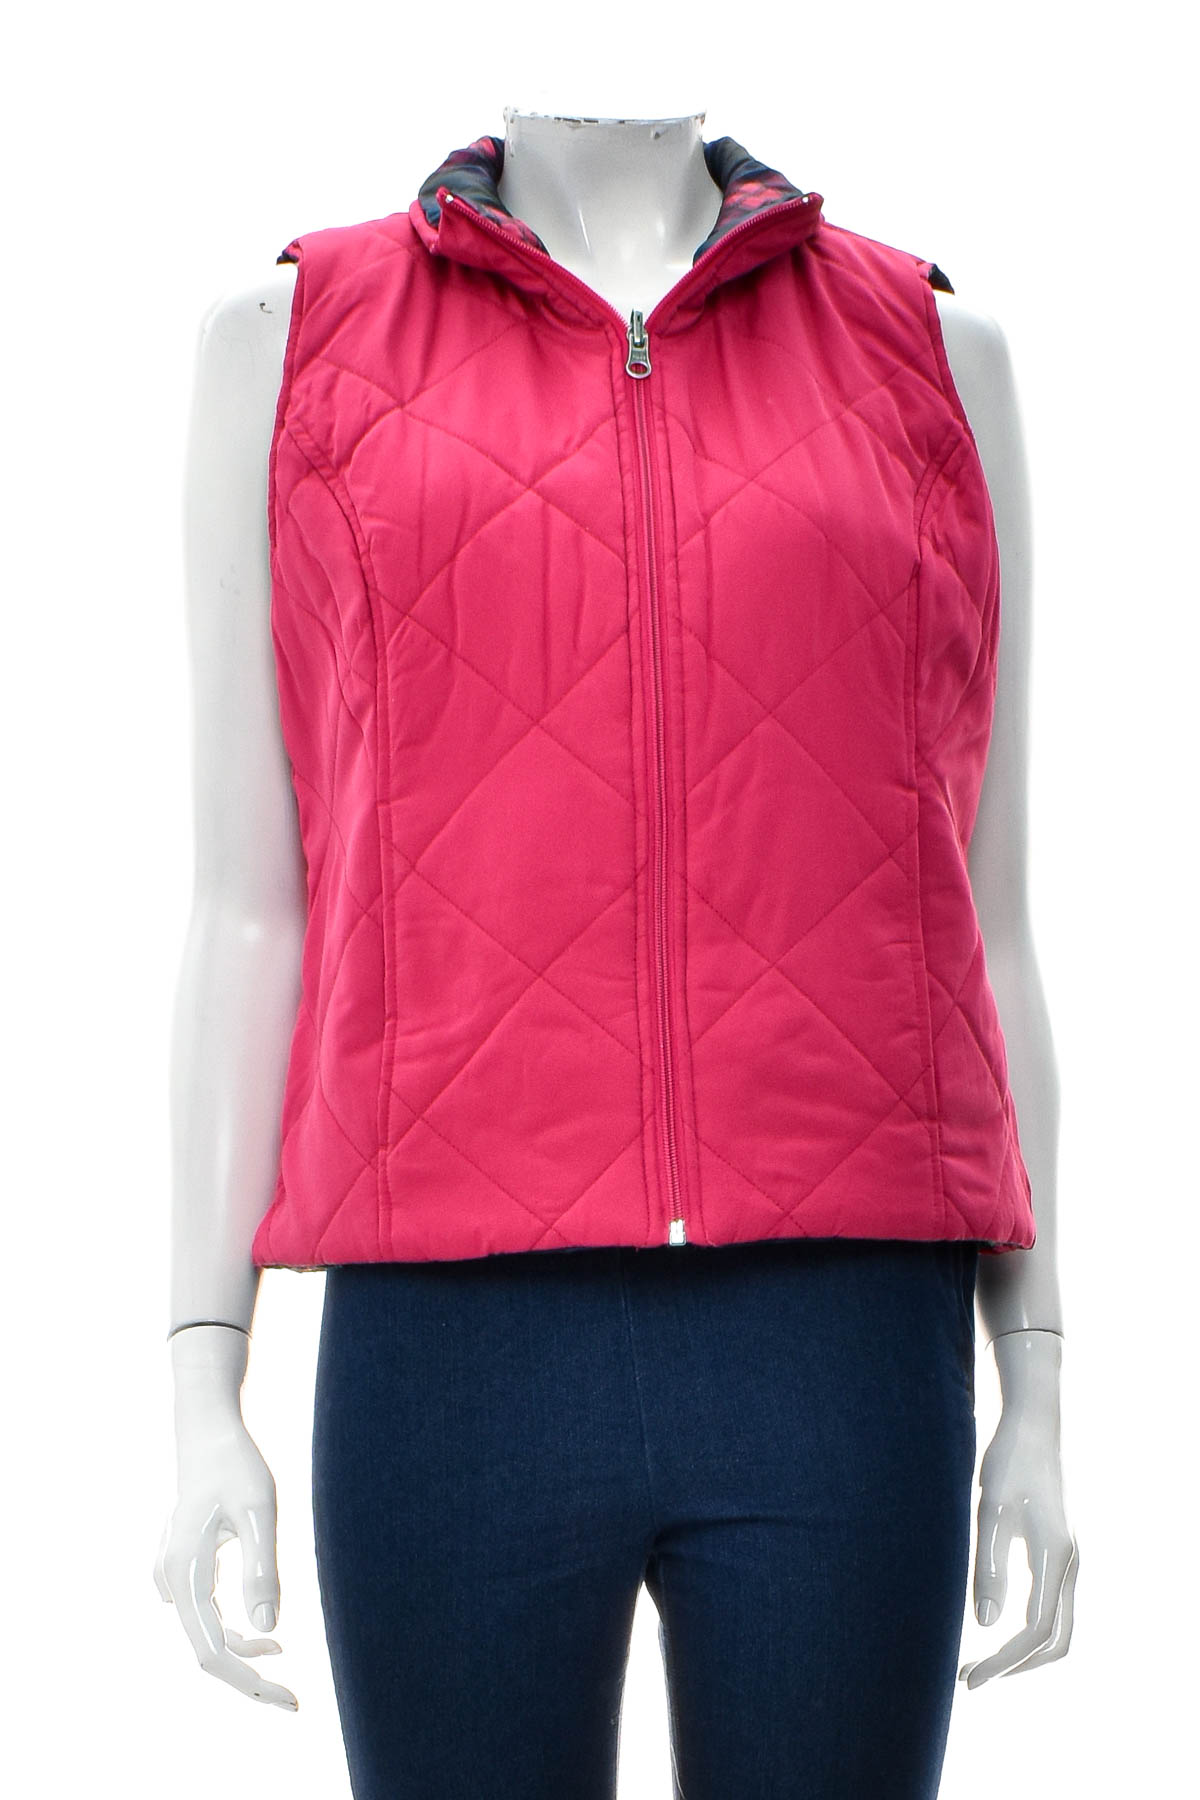 Women's vest reversible  - SJB ACTIVE - 1